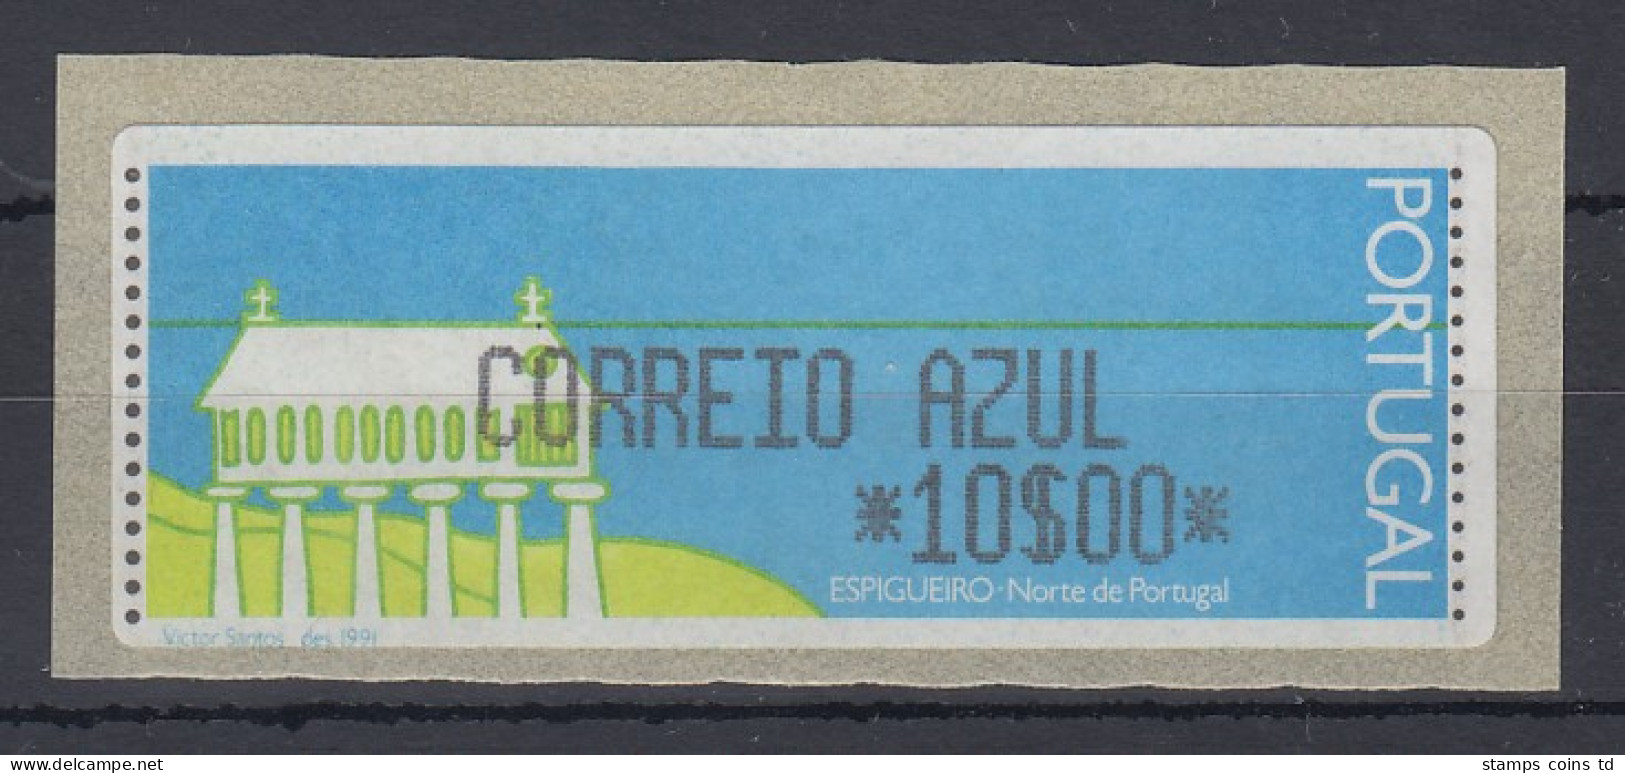 Portugal Monetel-LISA ATM Kornspeicher / Espigueiro, CORREIO AZUL 10 Esc.** - Vignette [ATM]